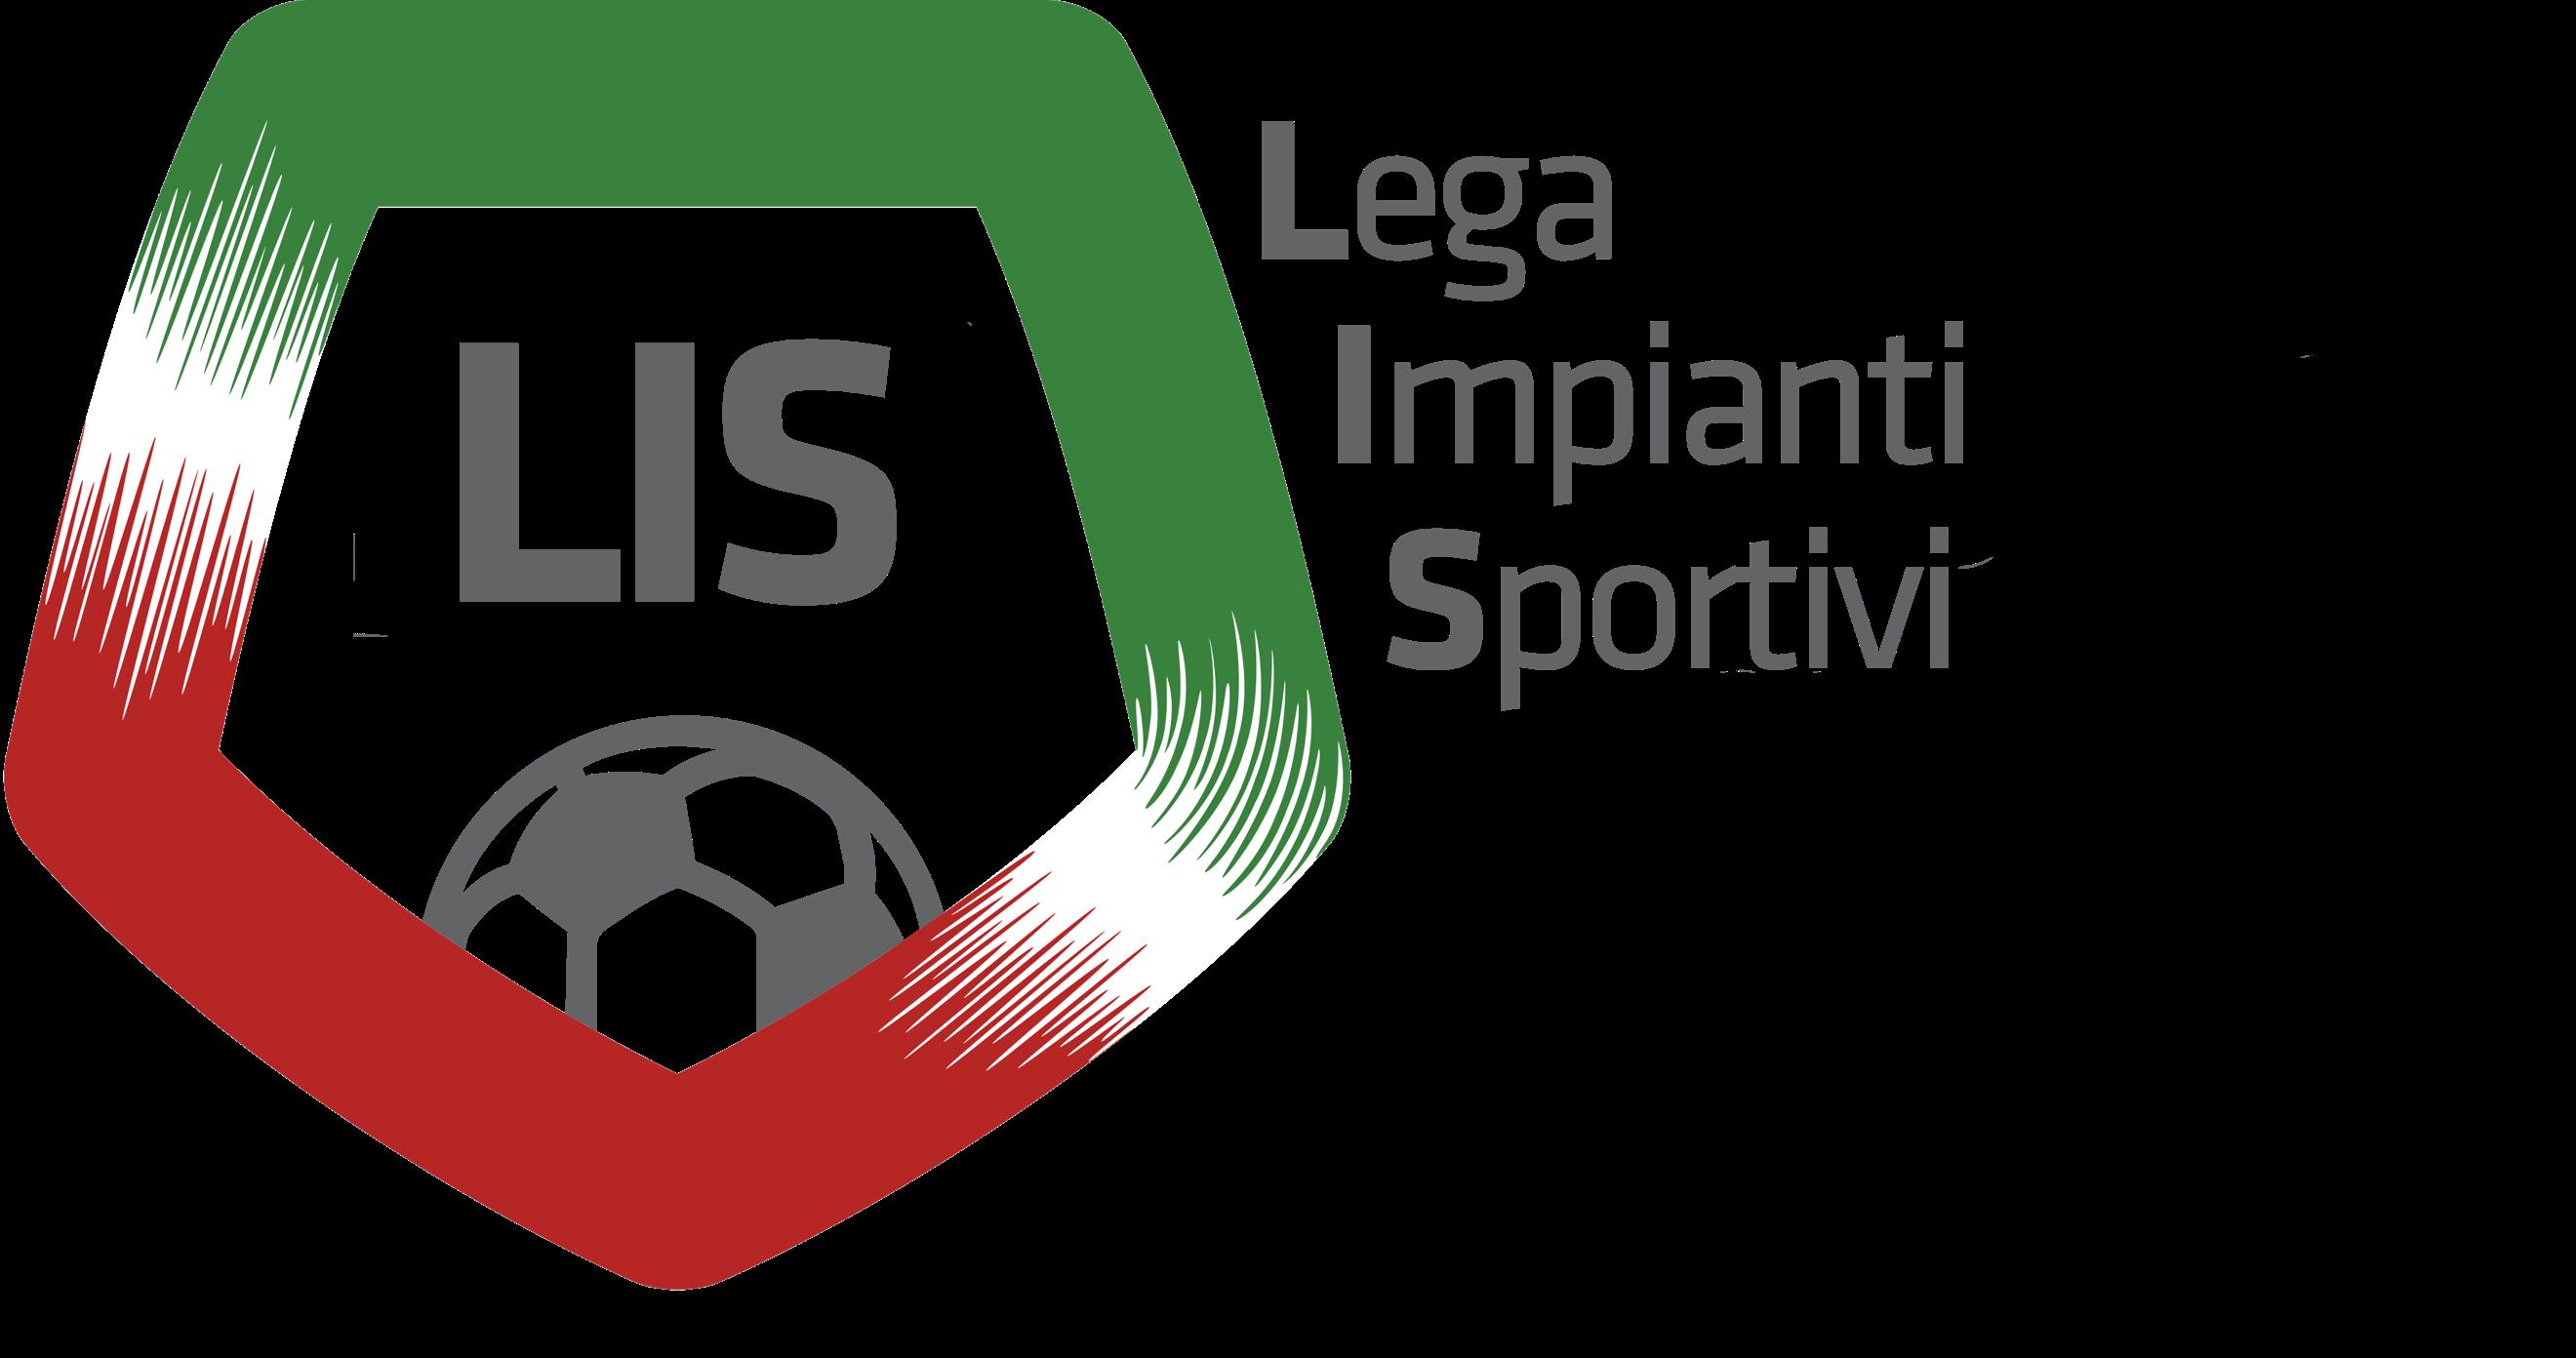 Comunicato del Gruppo “Lega Impianti Sportivi” (LIS).